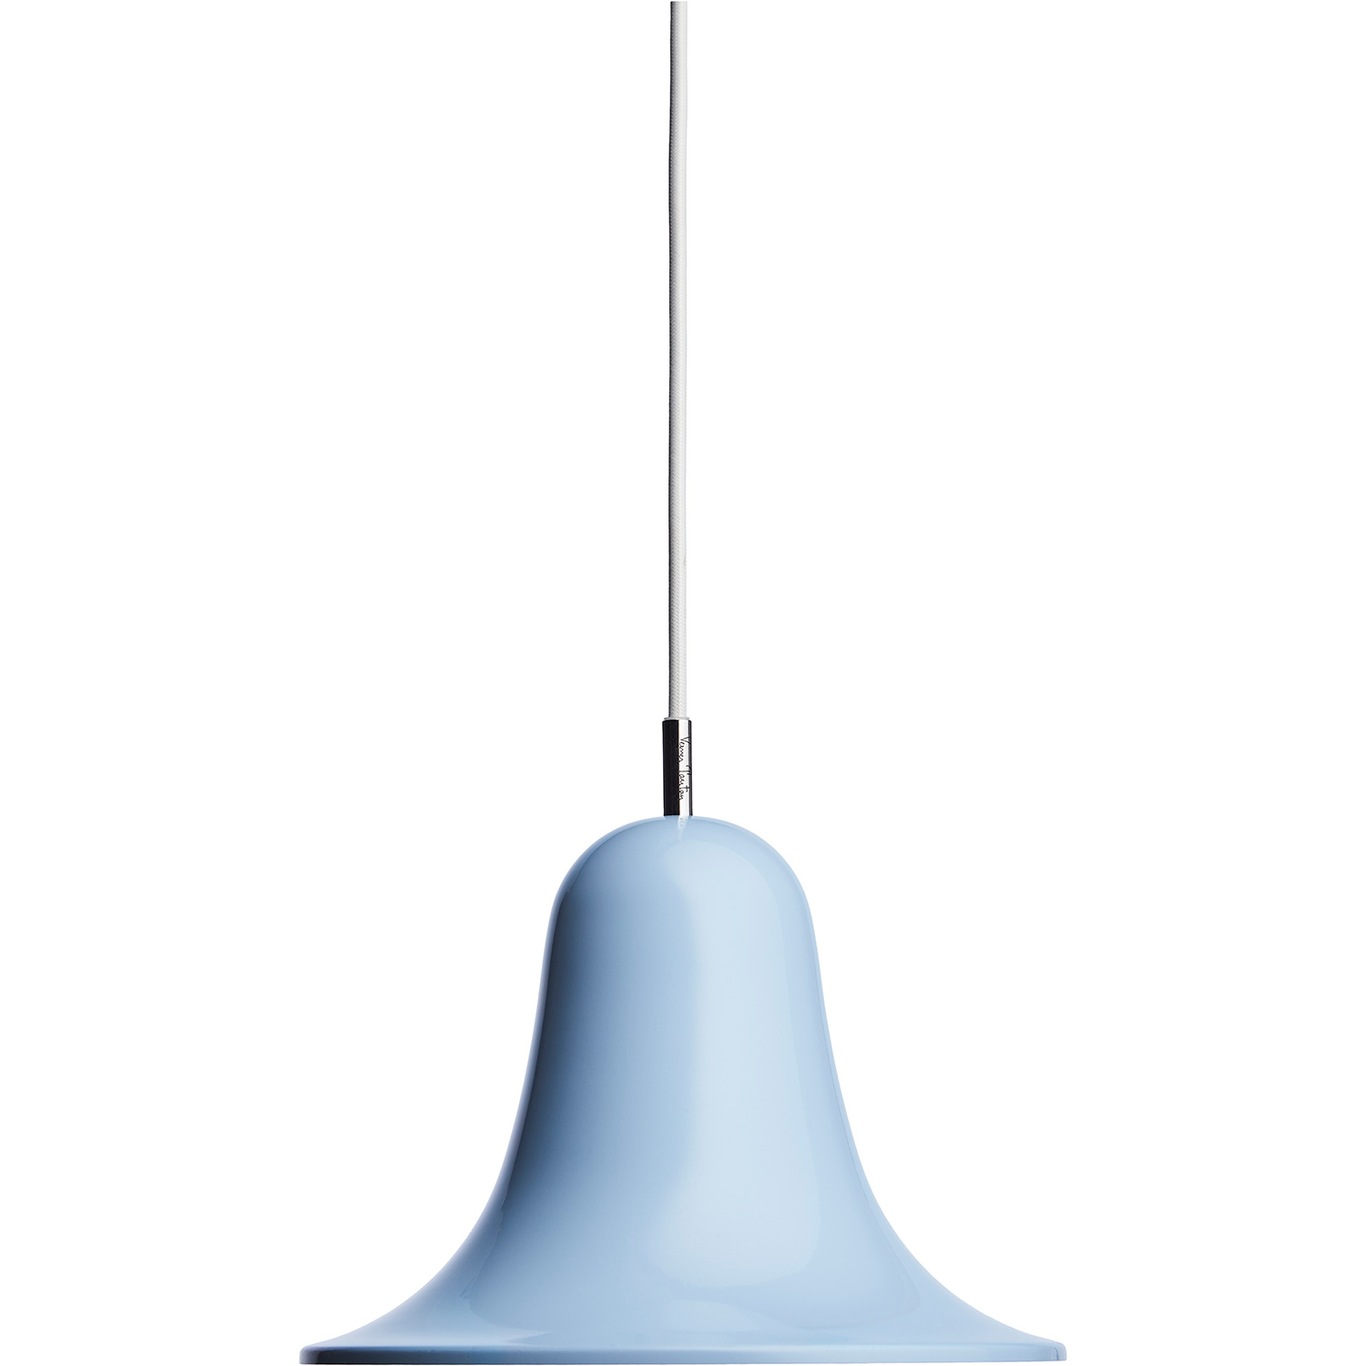 Pantop Pendel 23 cm, Light Blue